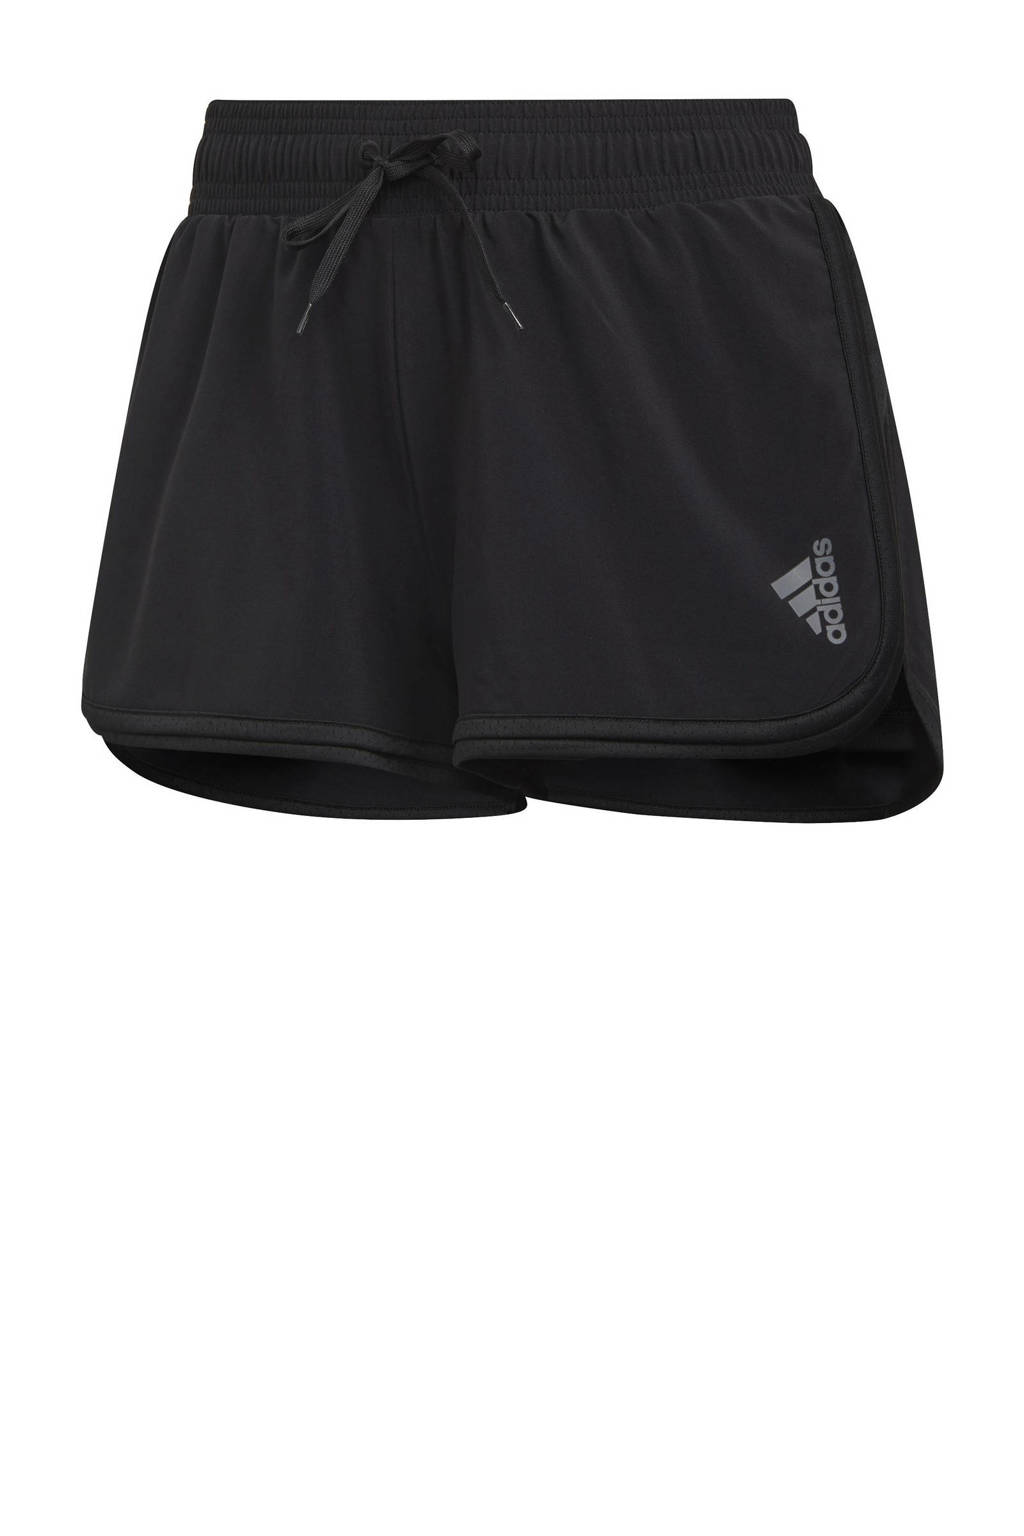 adidas Performance tennis short zwart/grijs